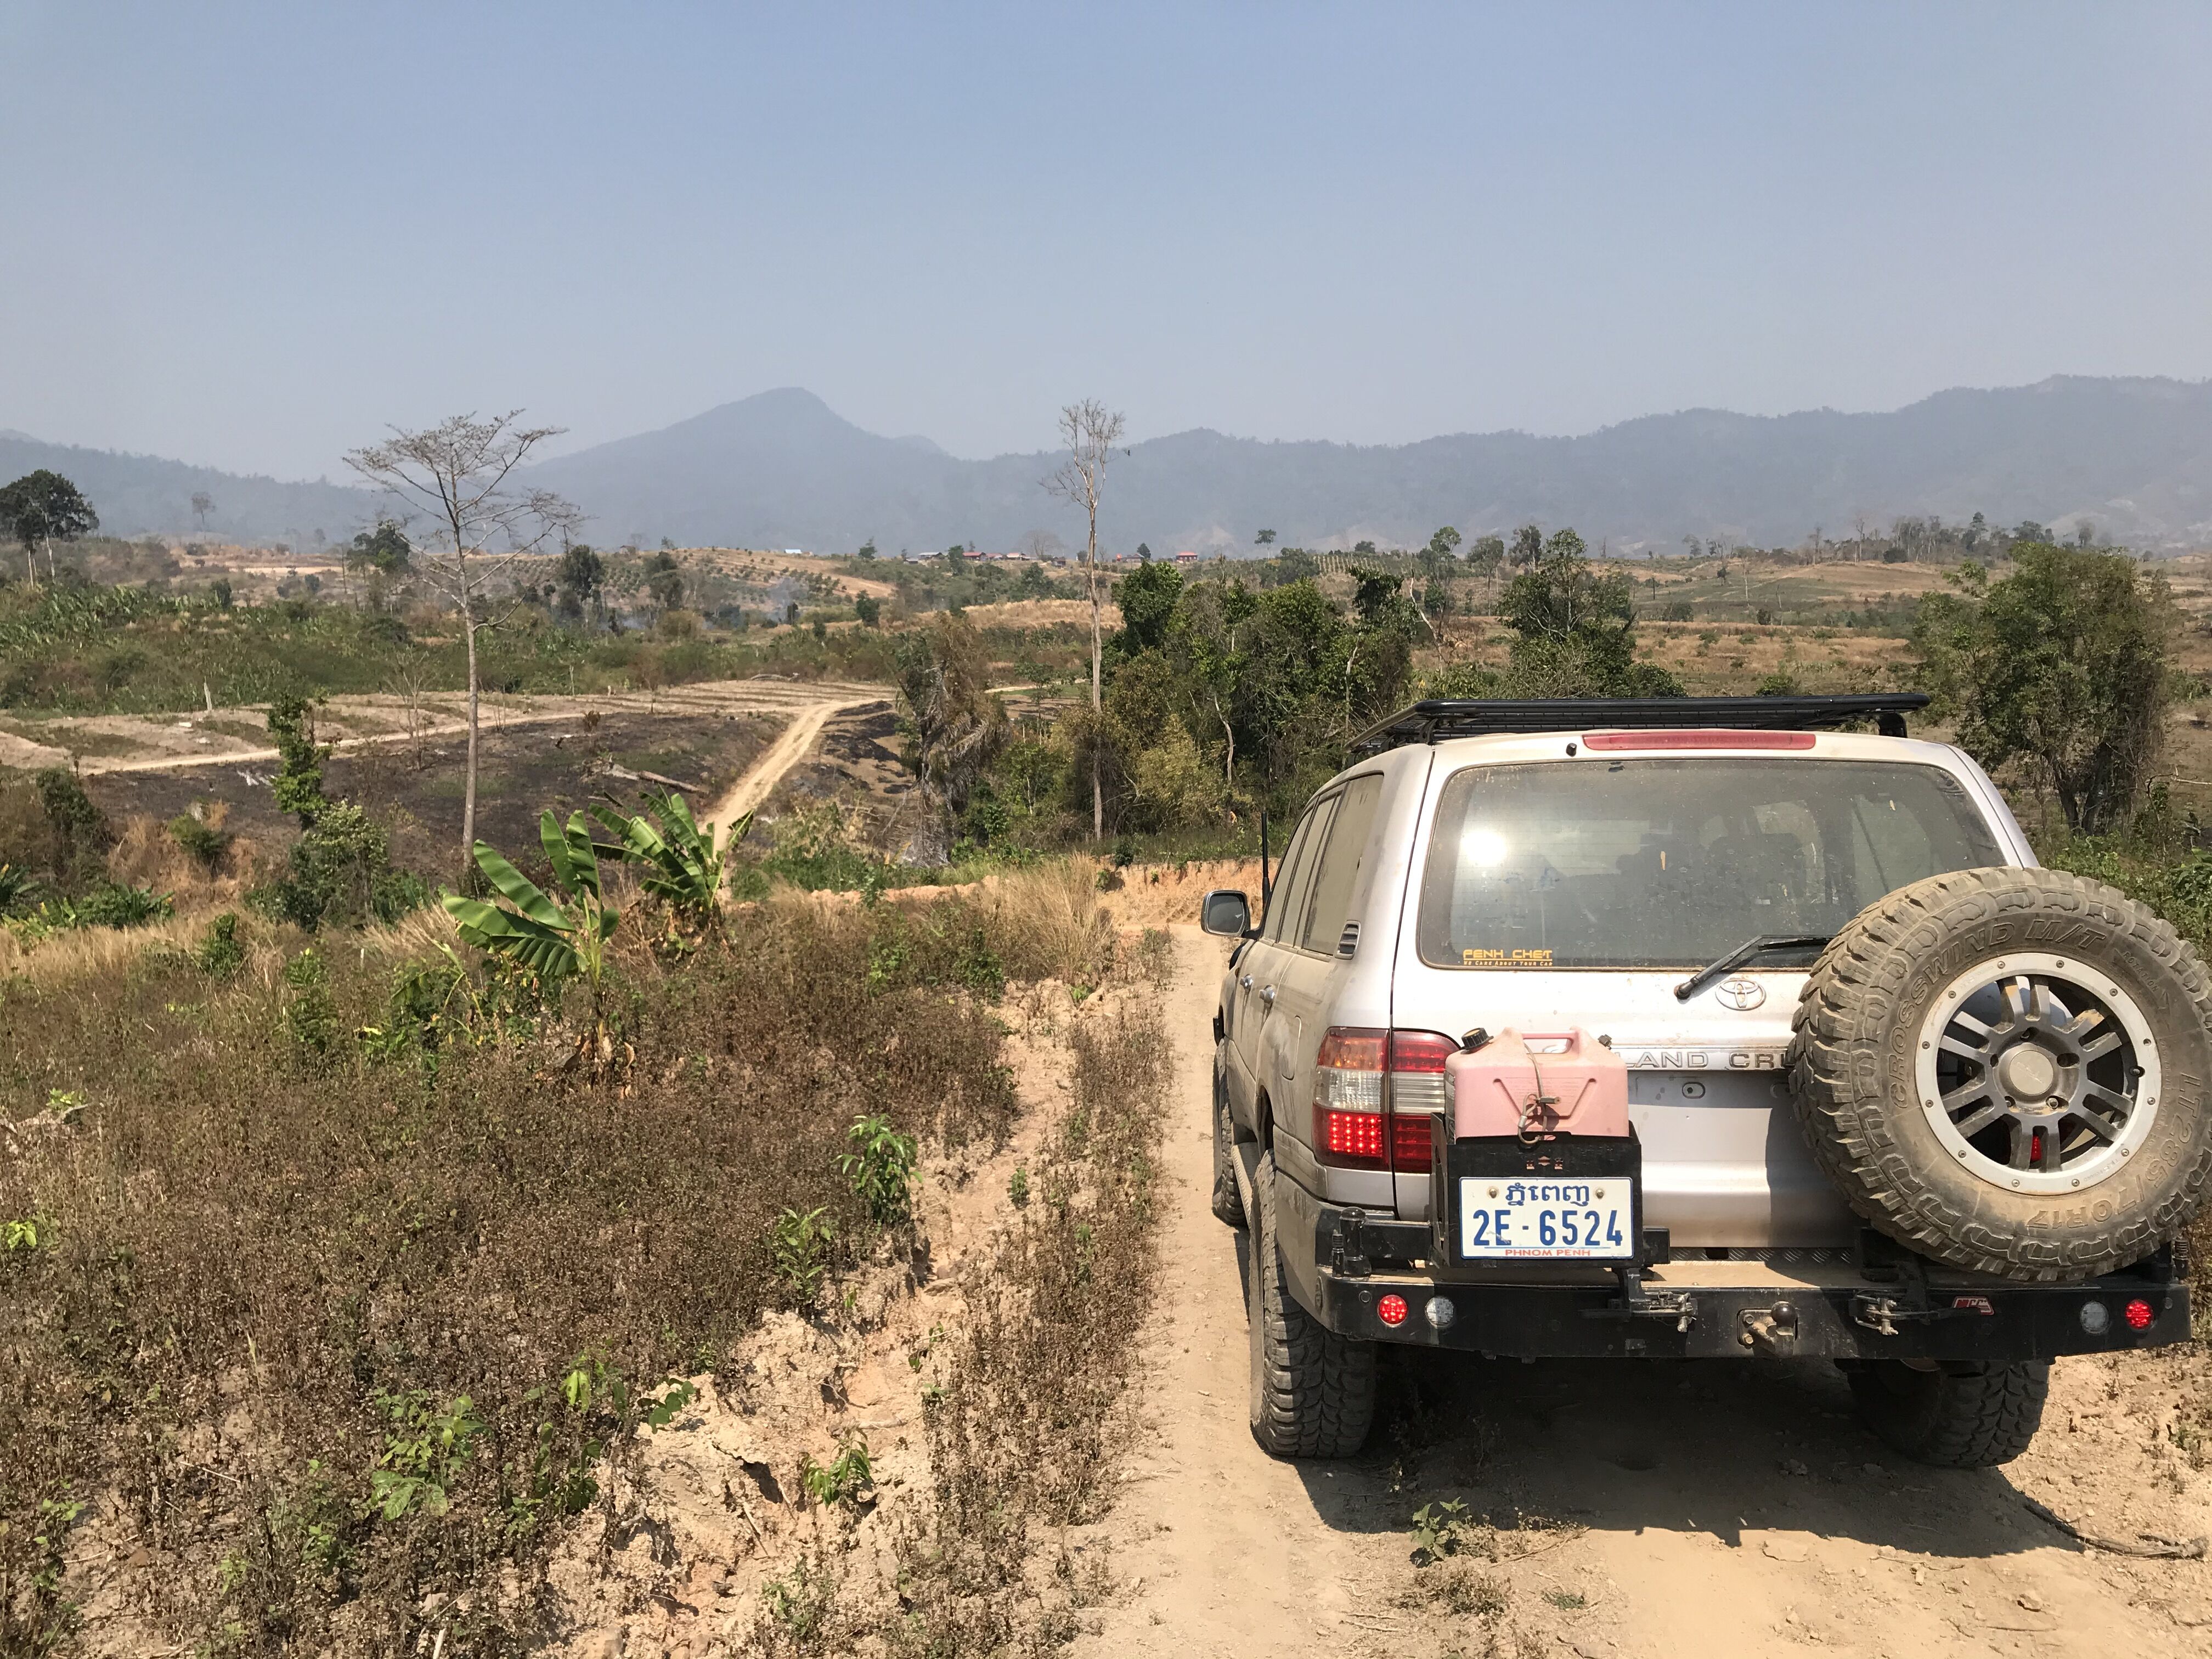 Cambodia farmland and jeep